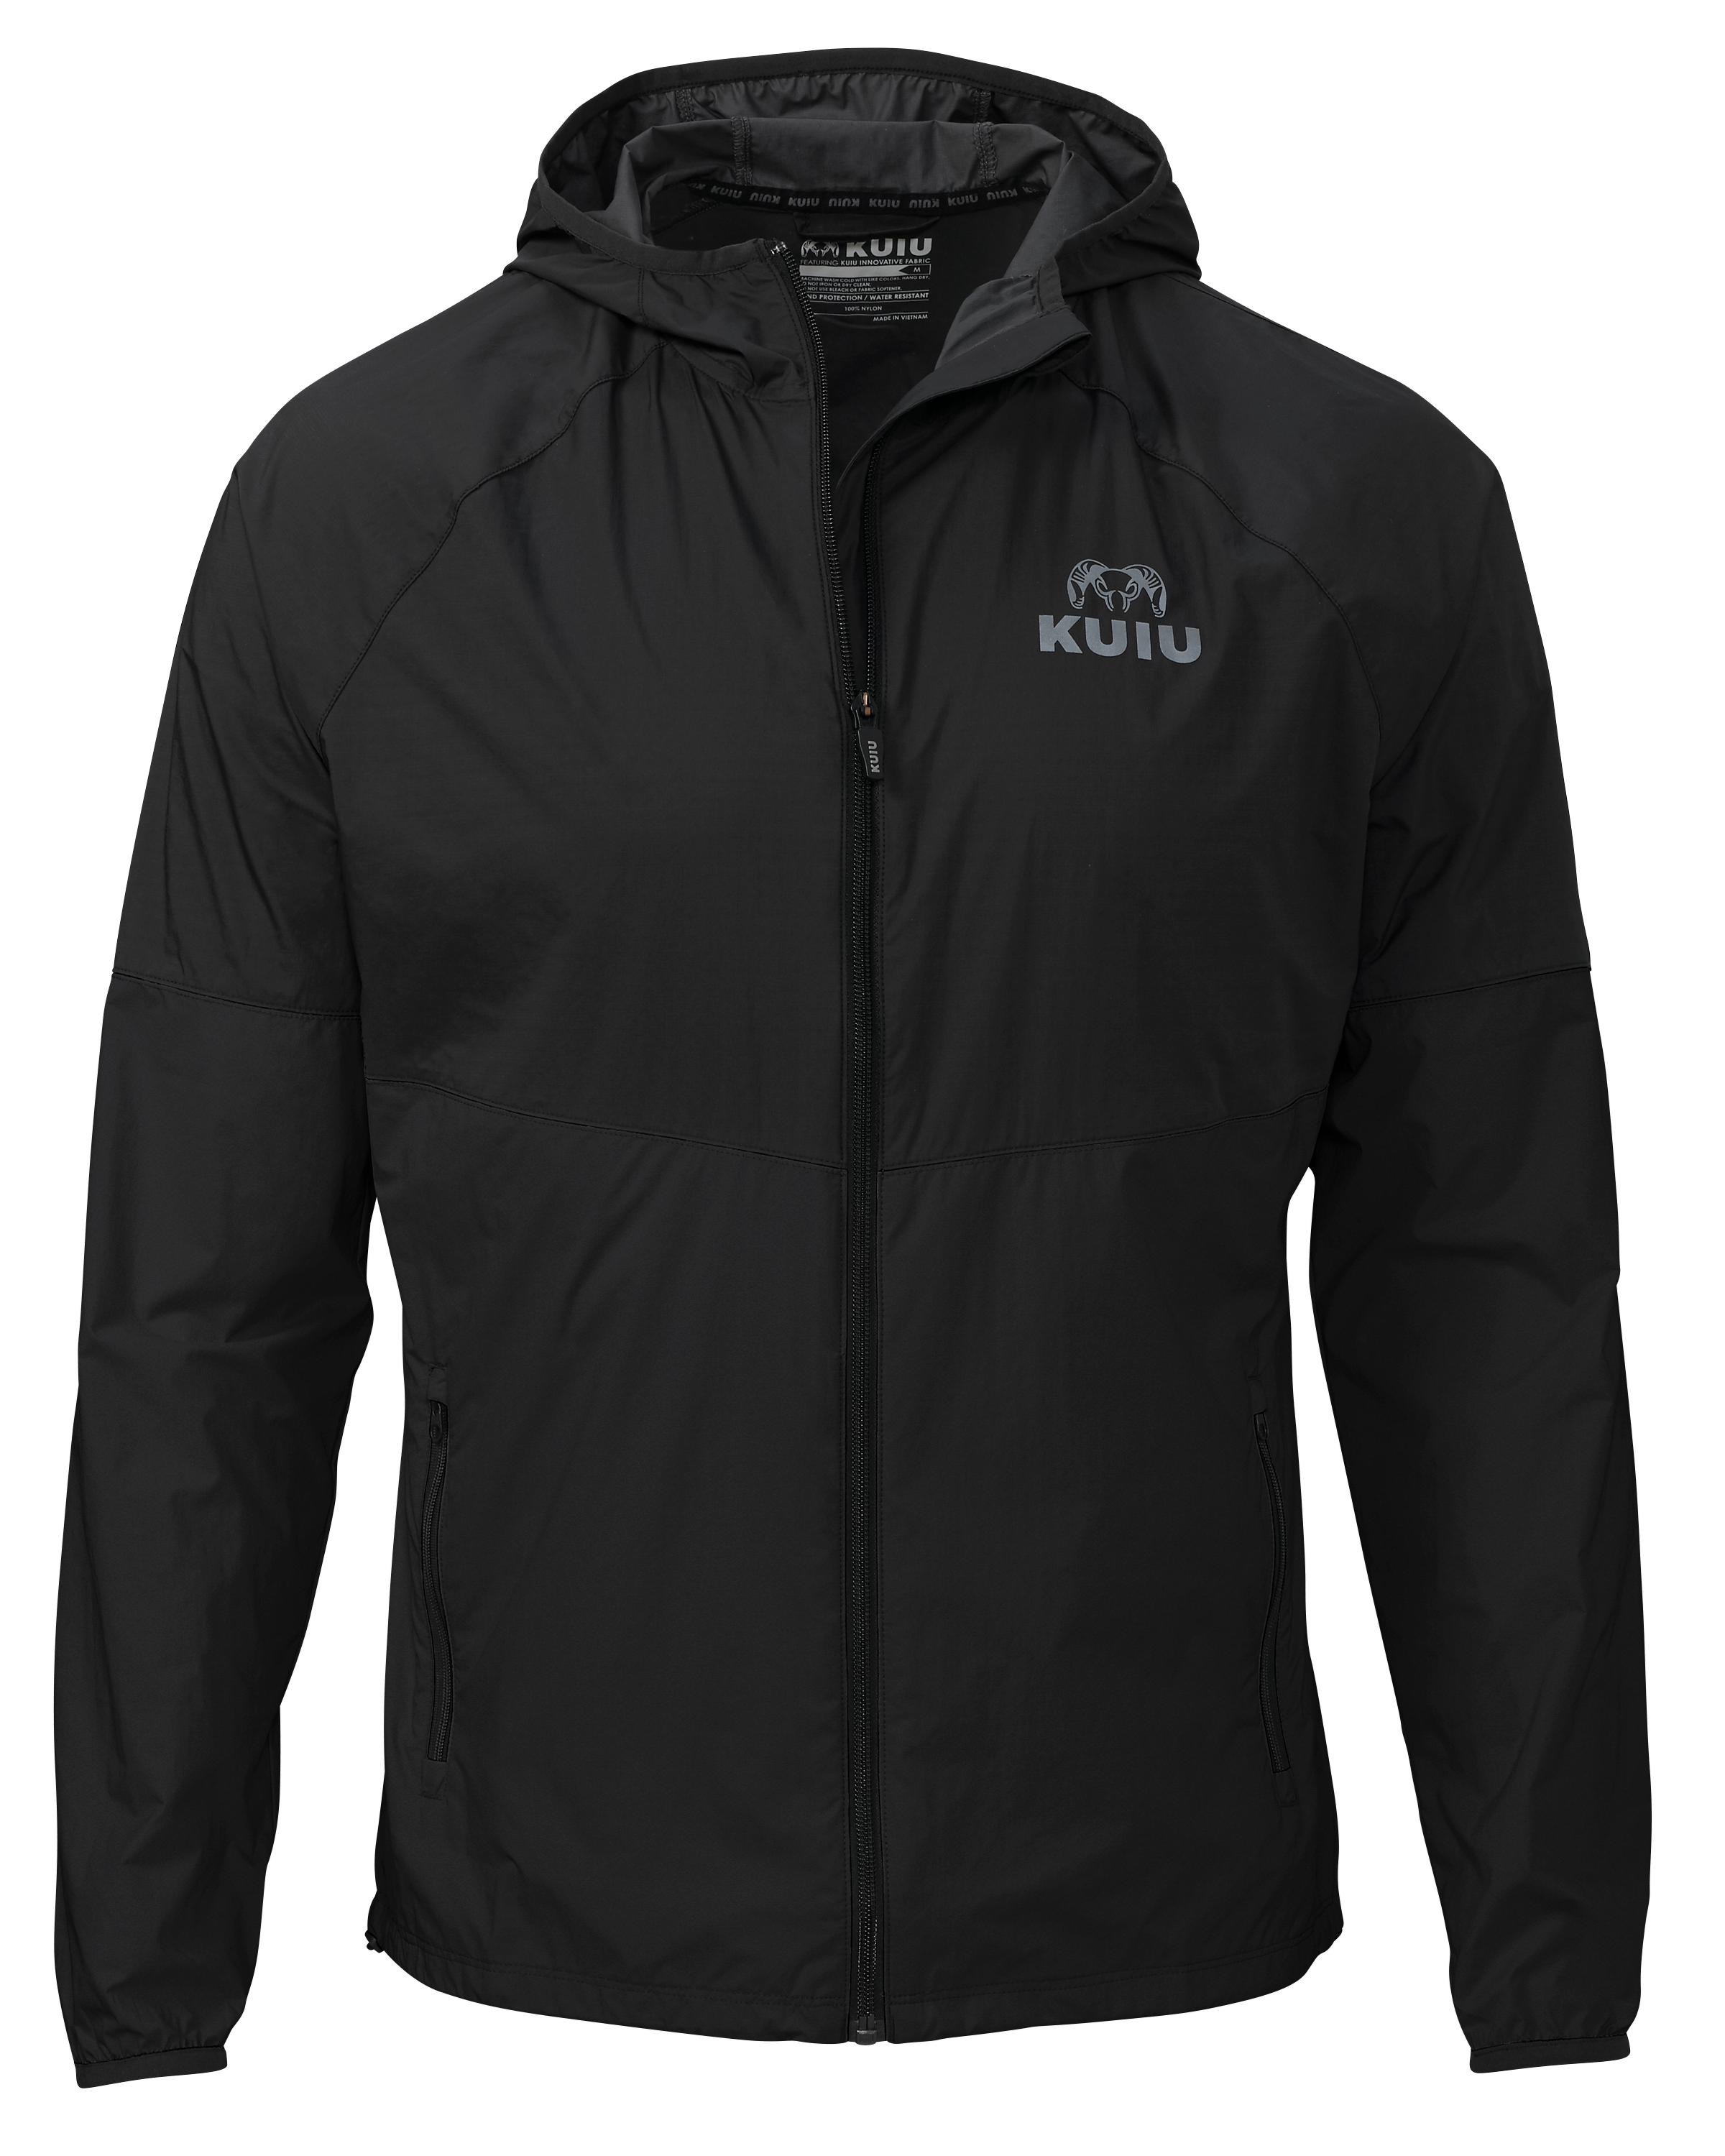 KUIU Training Tech Wind Jacket in Black | Size XL